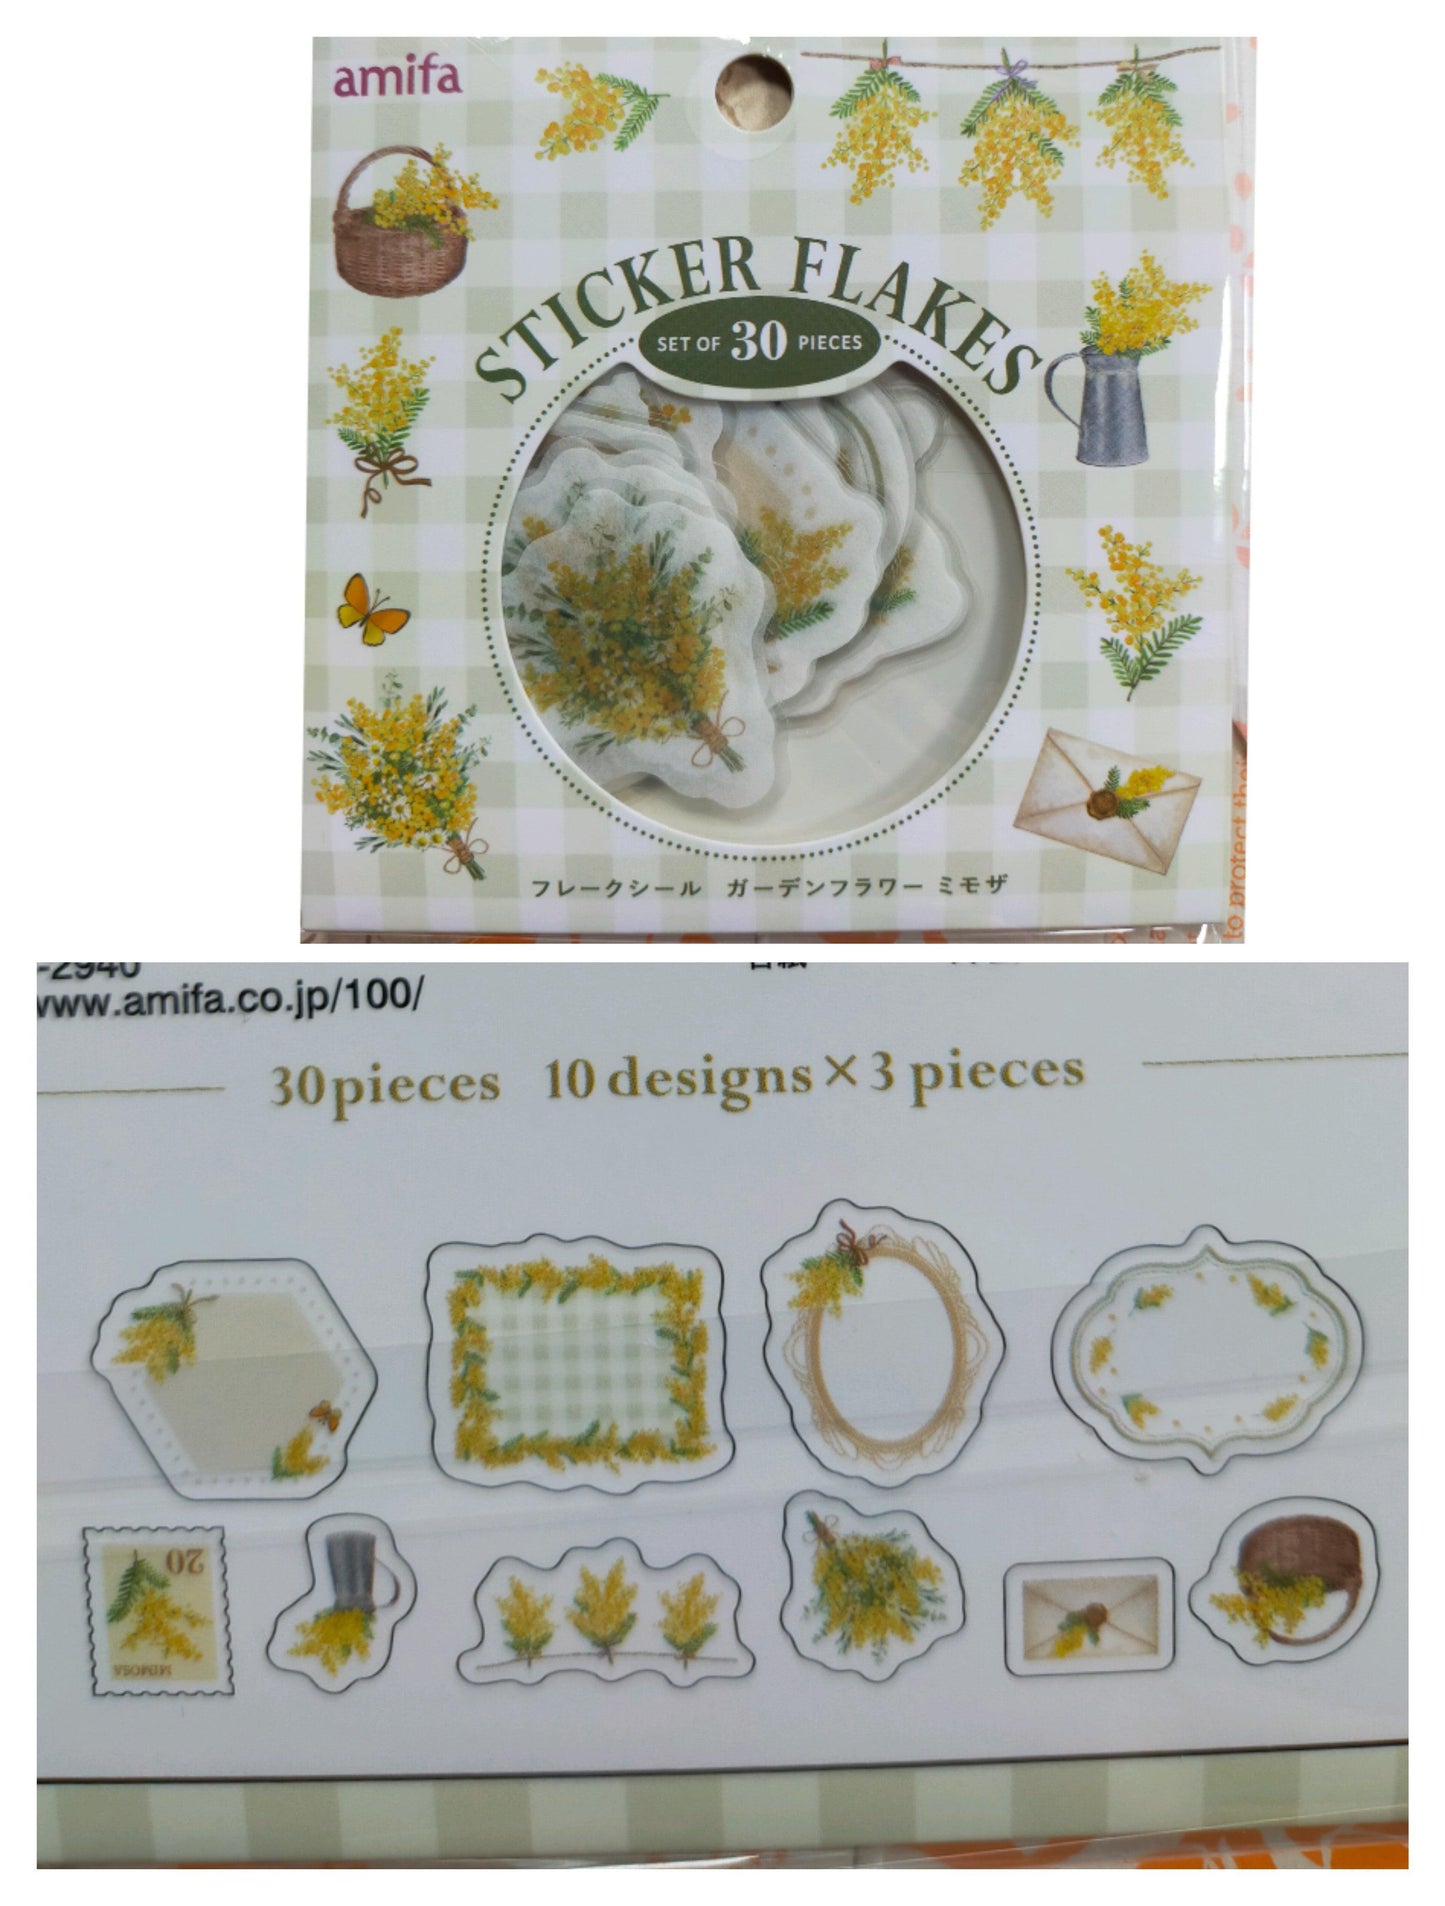 STICKER FLAKES Garden Flower 10designs*3pieces, amifa _ Lavender / Mimosa